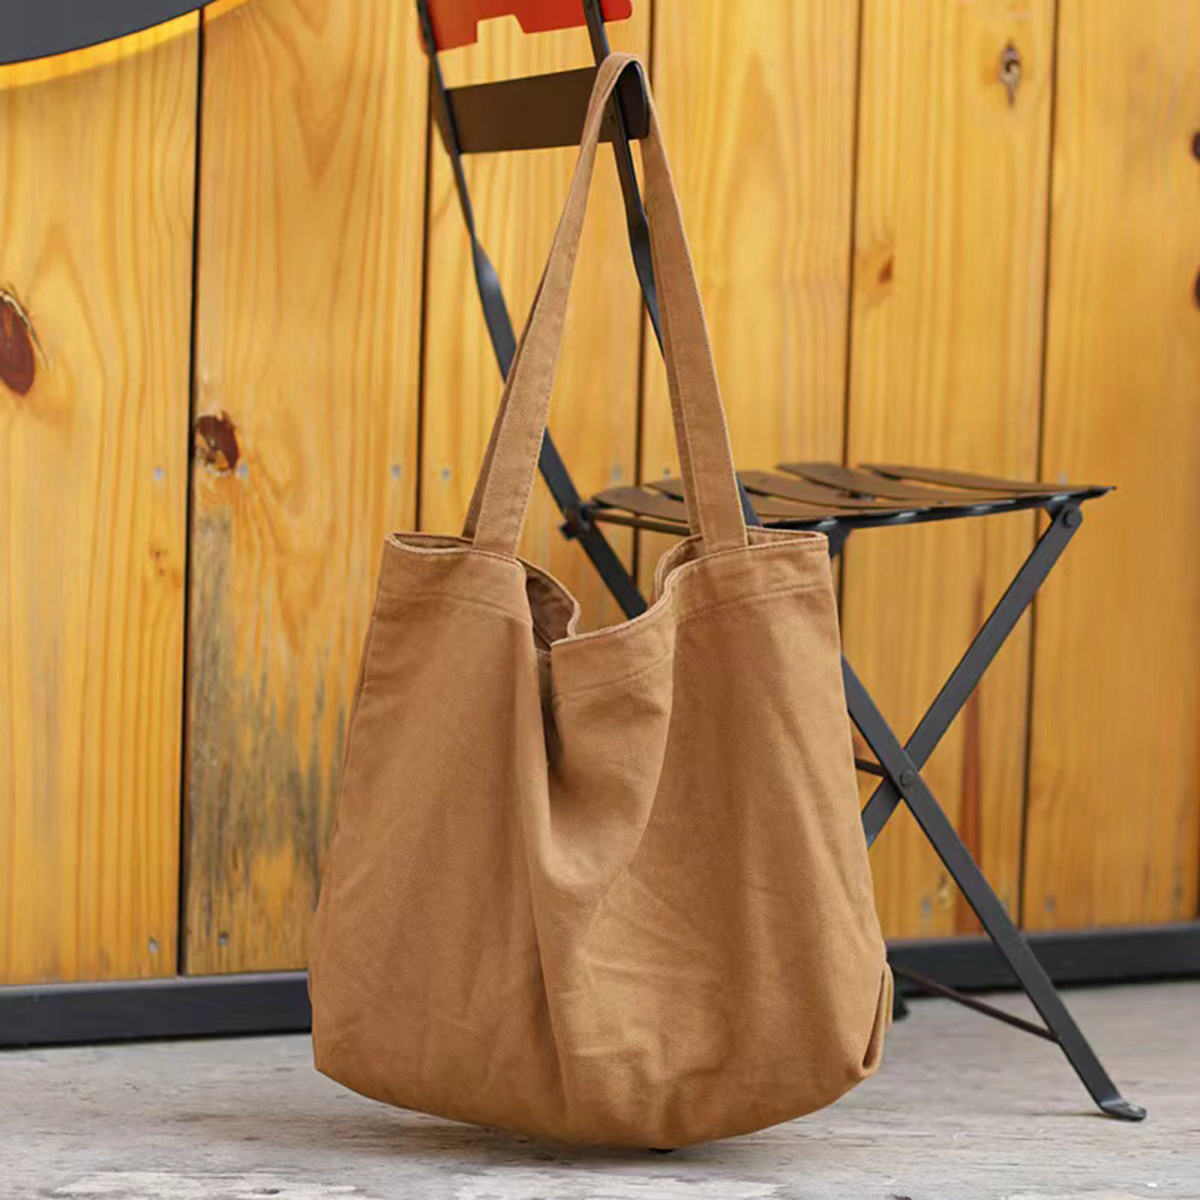 

Large Capacity Solid Color Canvas Bag, Shopping Bag, Tote Bag, Shoulder Bag